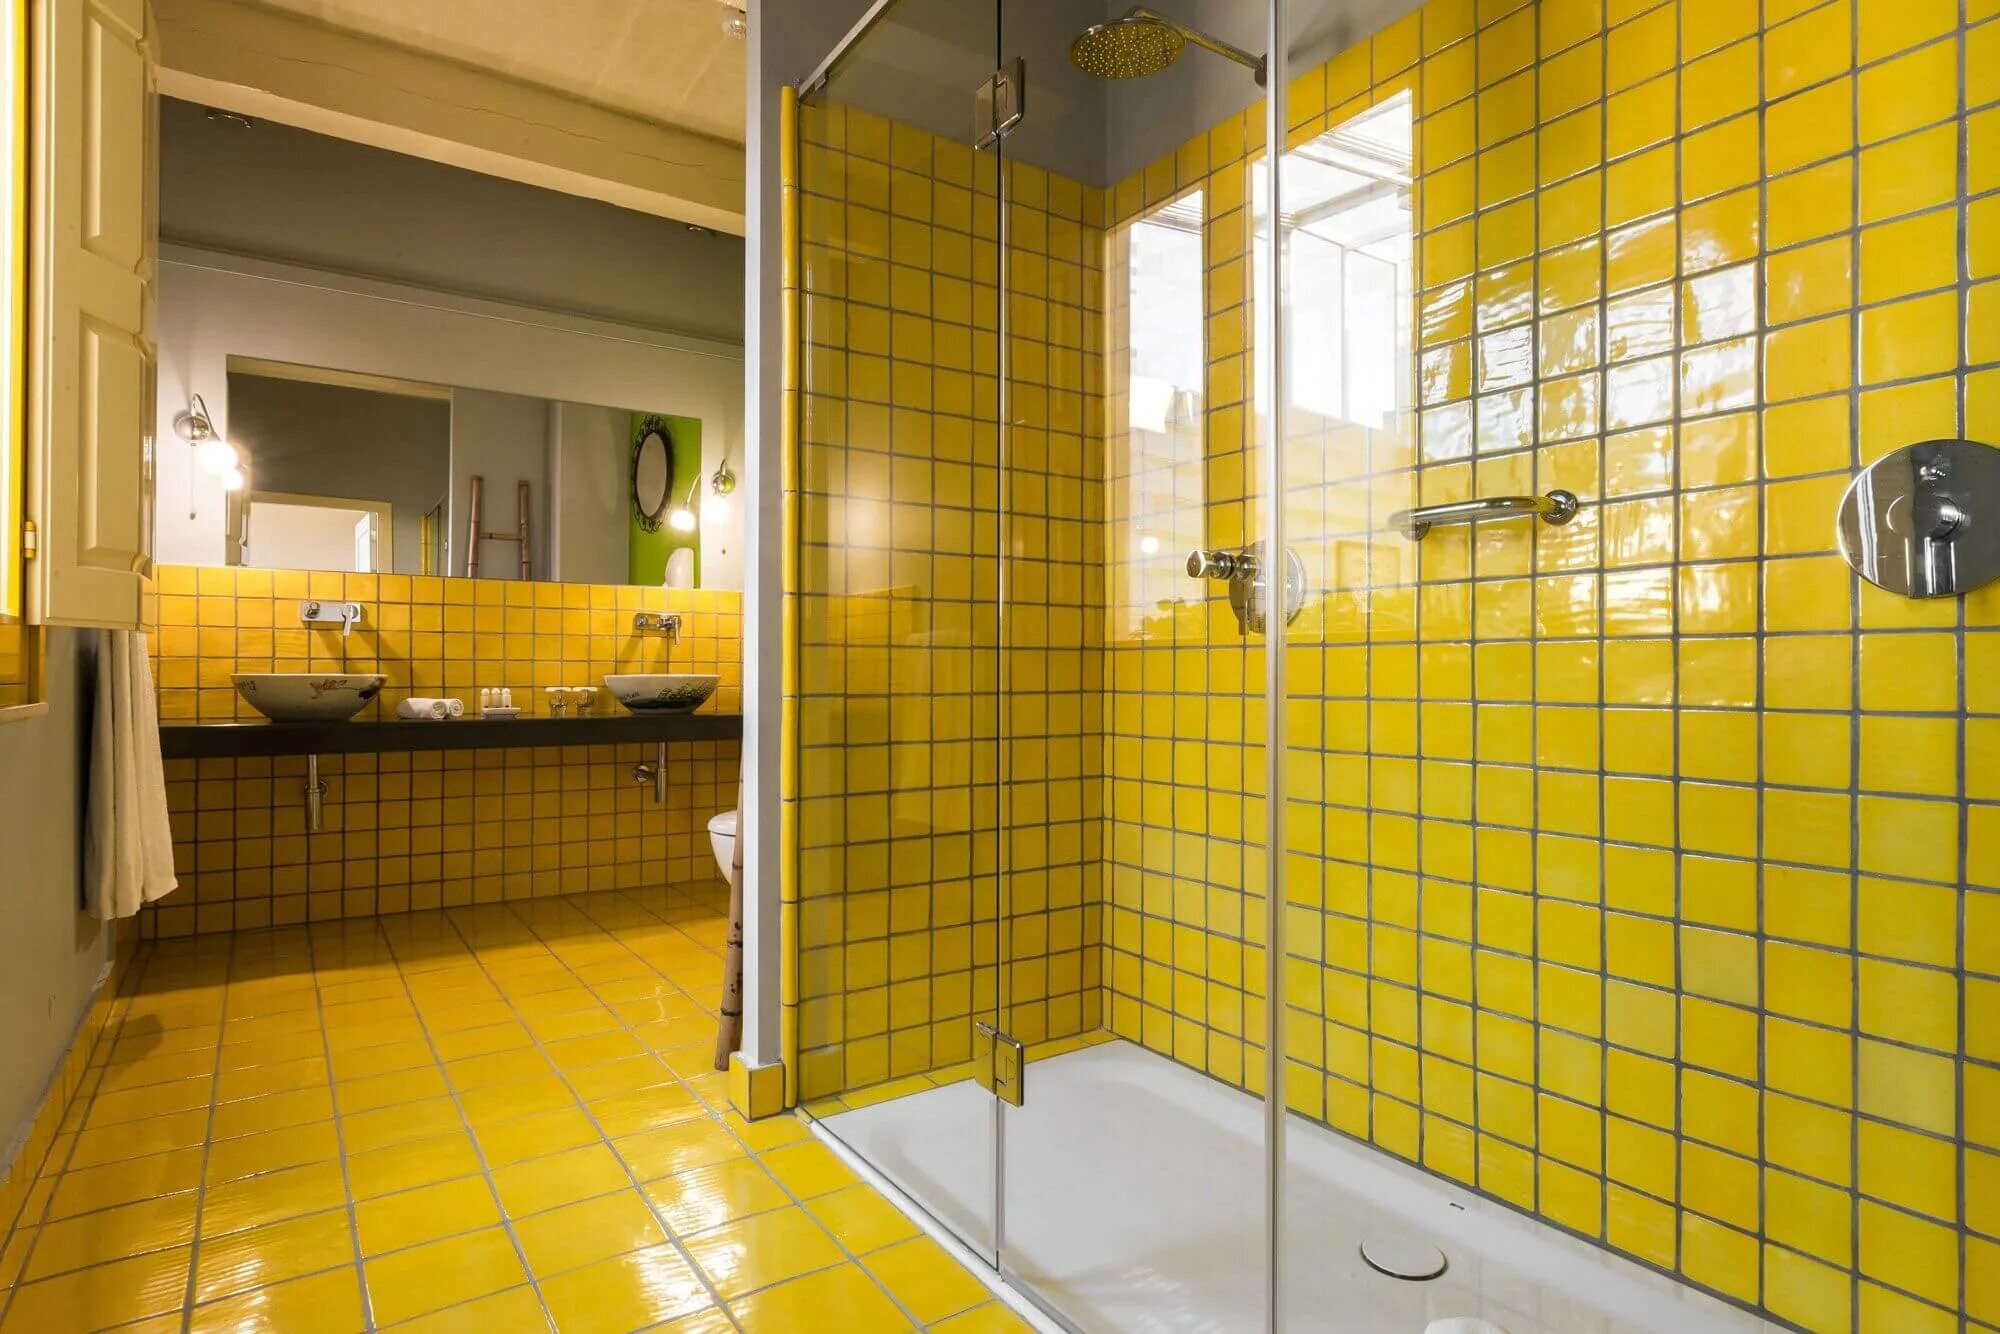 Желтая плитка купить. Желтая плитка для ванной комнаты. Ванная с желтой плиткой. Ванная в желтом цвете. Ванная комната с желтой плиткой.